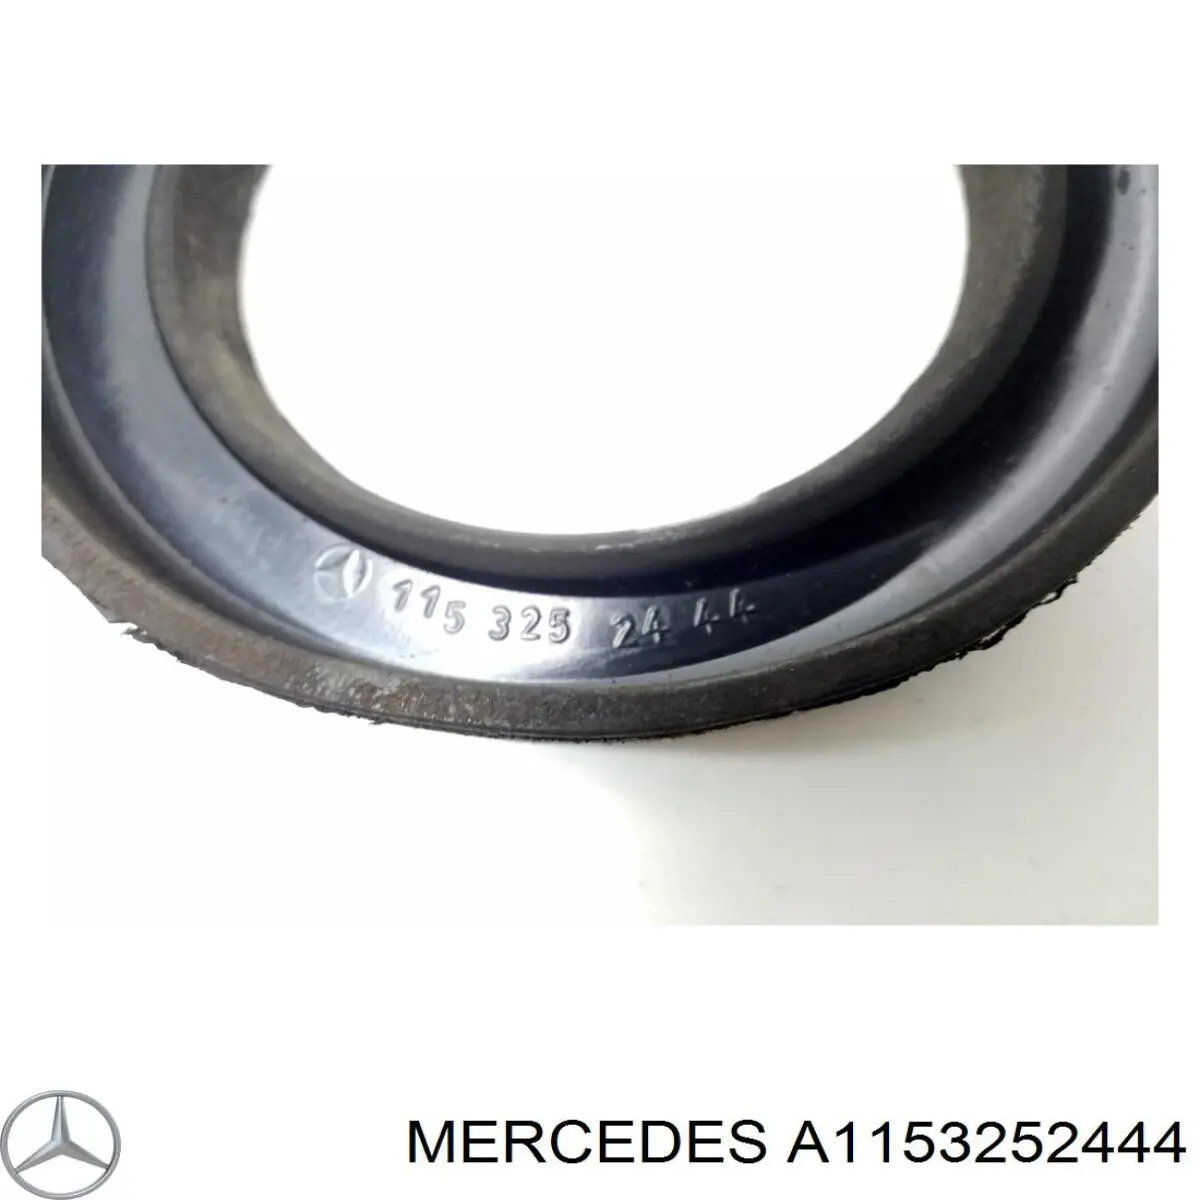 A1153252444 Mercedes caja de muelle, eje trasero, arriba